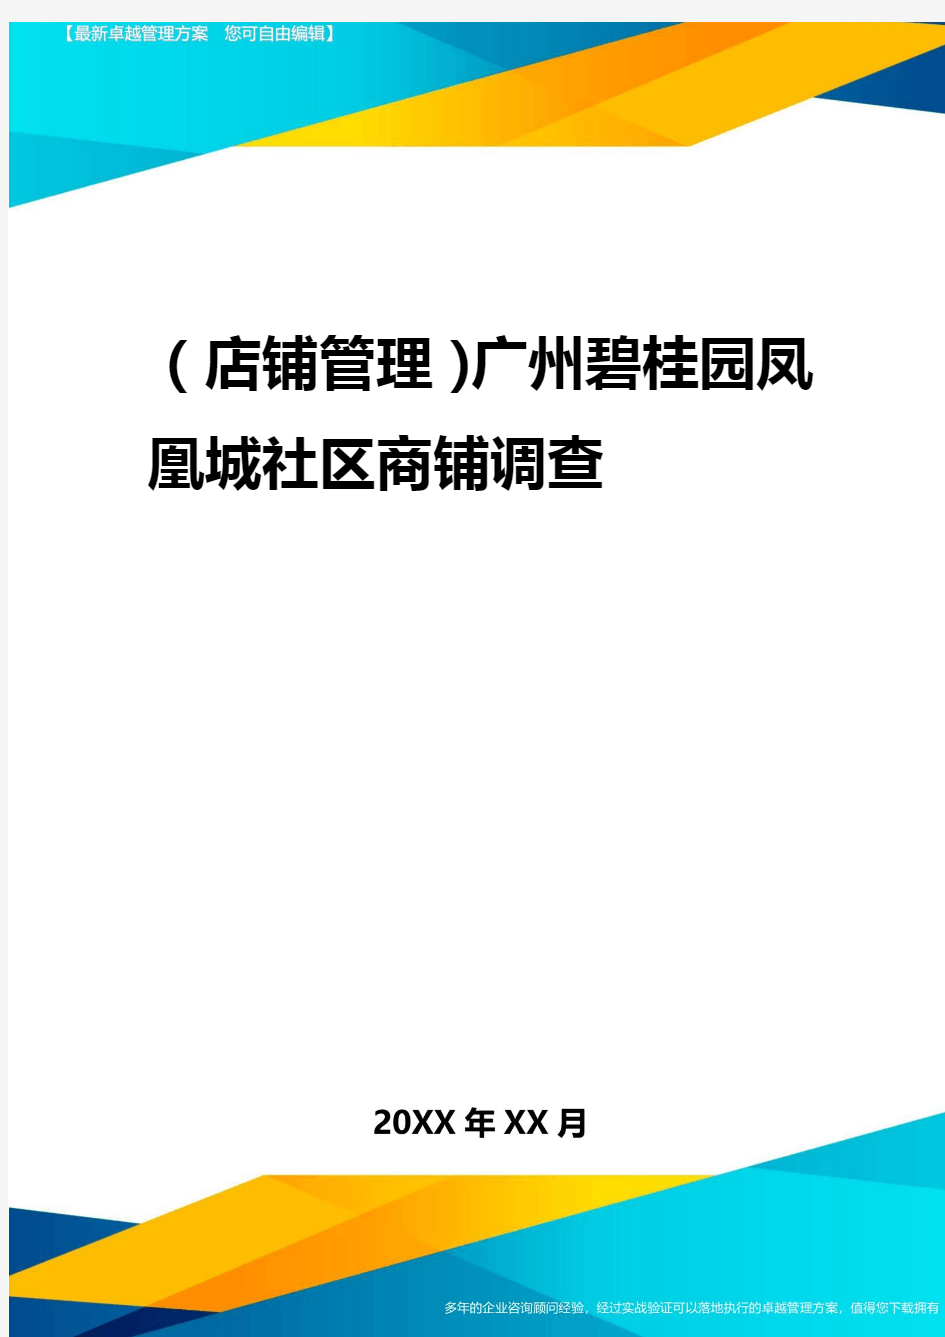 2020年(店铺管理)广州碧桂园凤凰城社区商铺调查